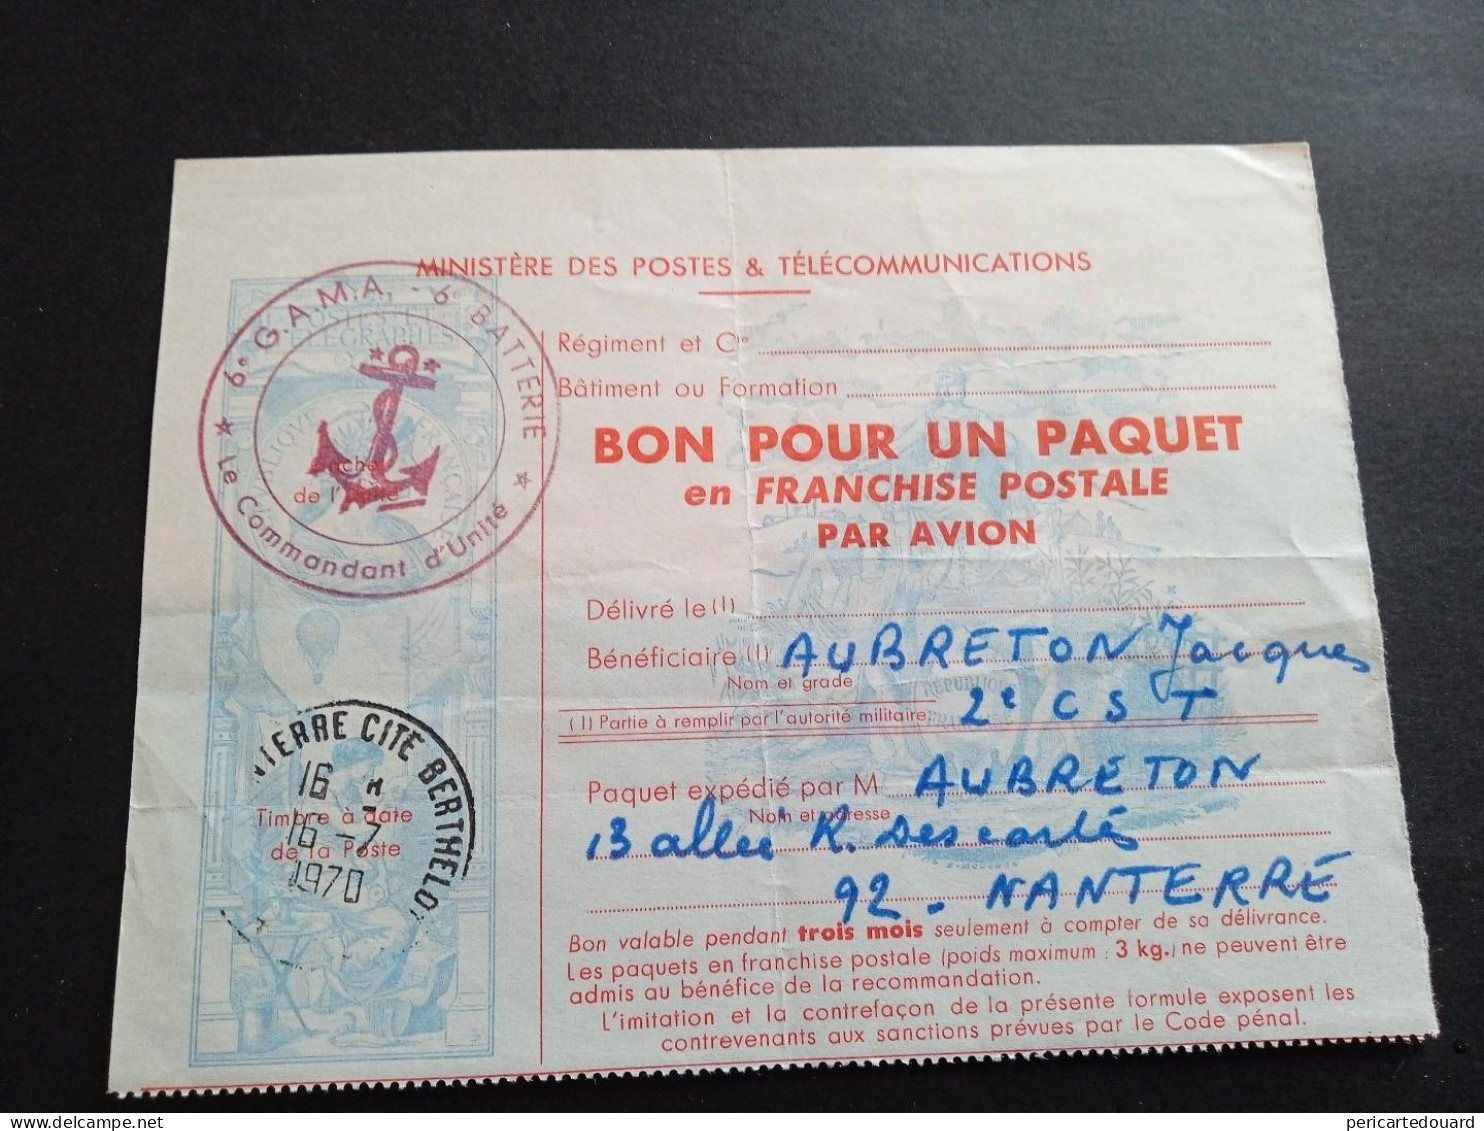 "Bon Pour Un Paquet En Franchise Postale Par Avion". TTR Et Circulé. 1/10 De La Côte, Estimation Dallay 2009. 2000 Euros - Military Postage Stamps